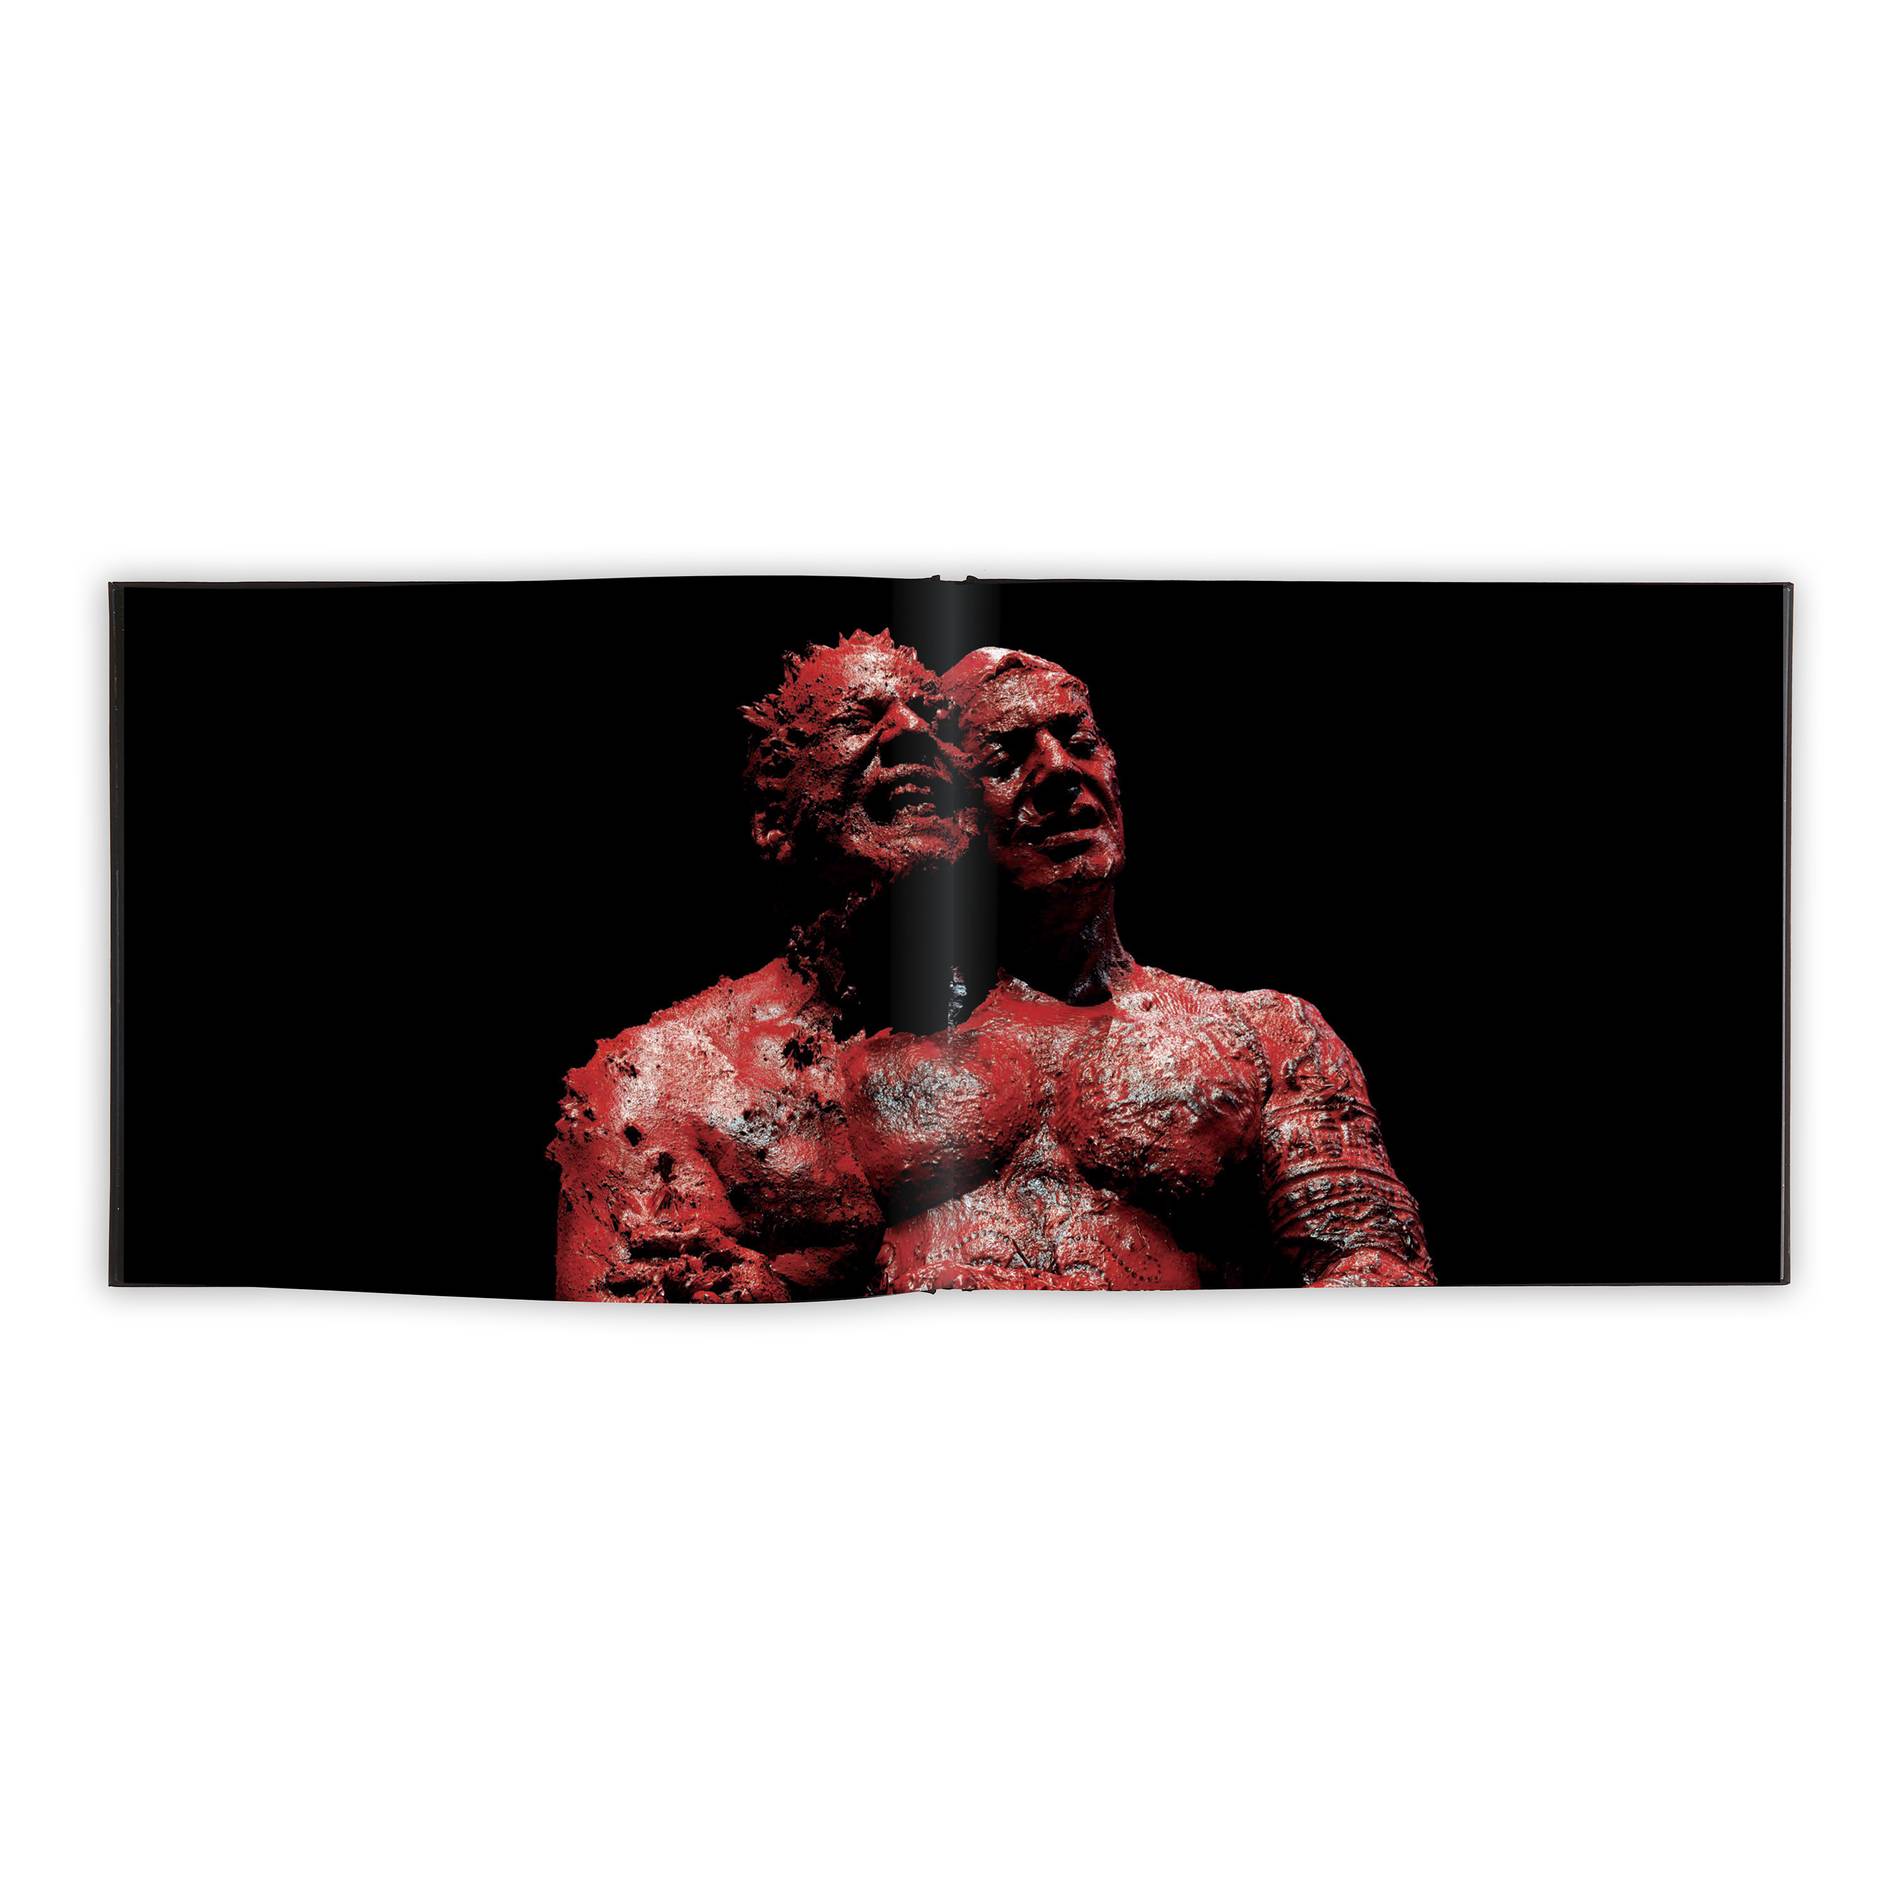 Danny Elfman 3D scan portrait by Sarah Sitkin